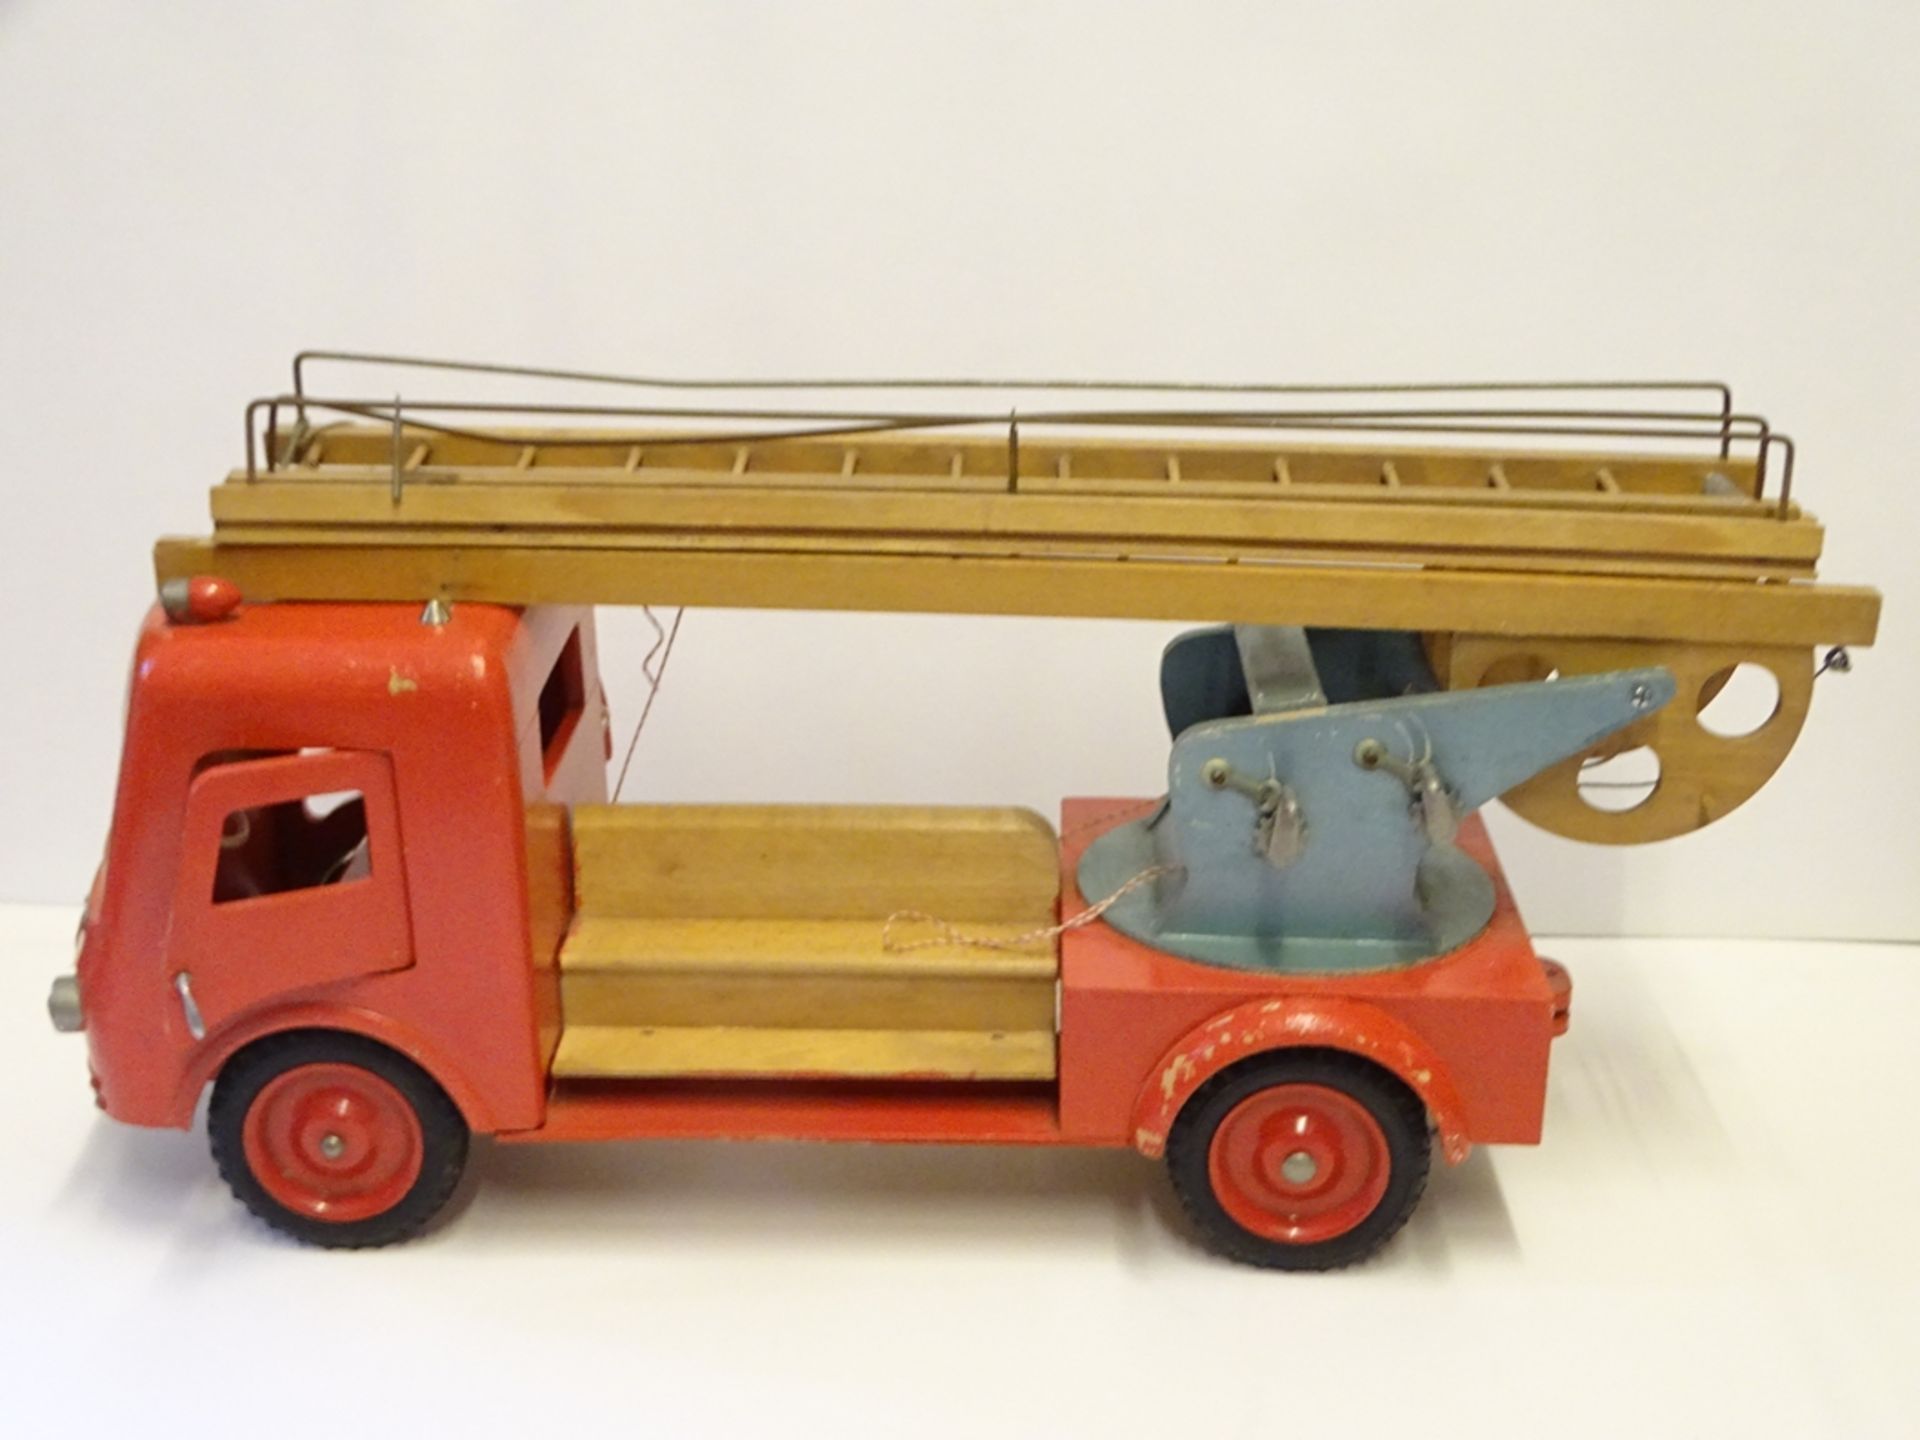 grosses Holz-Feuerwehr-Auto, lackiert, H-25 cm, L-55 cm, leicht bespielt - Bild 7 aus 10